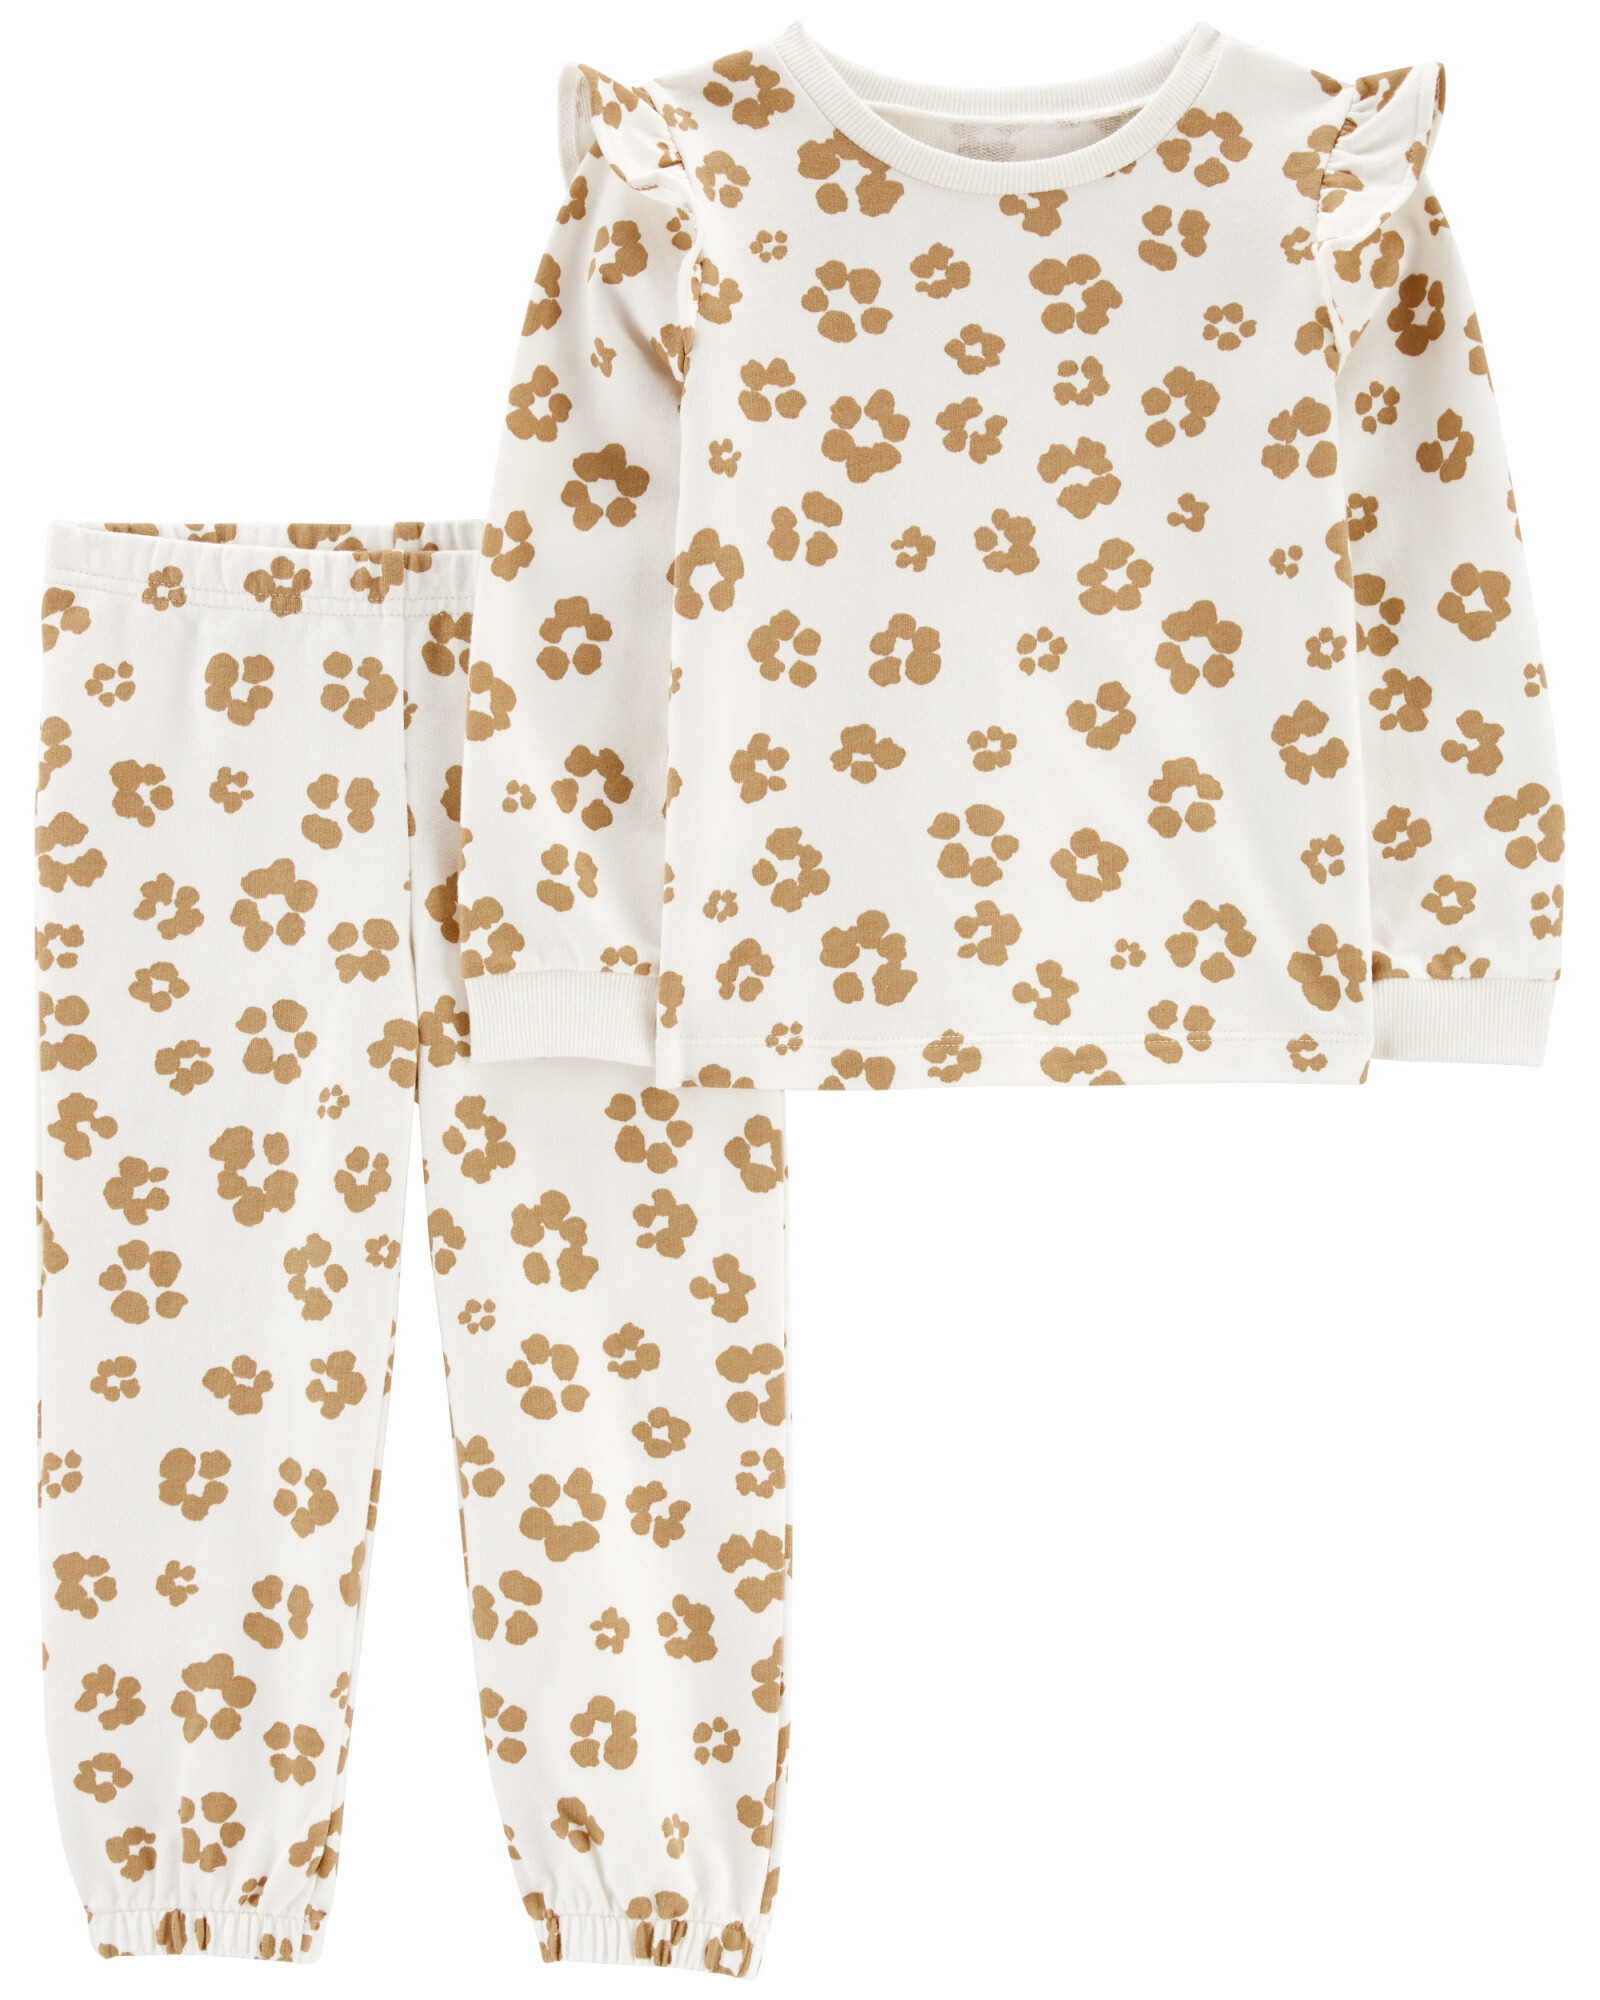 Set dos piezas pantalón y remera manga larga con volados de algodón con felpa diseño leopardo 0